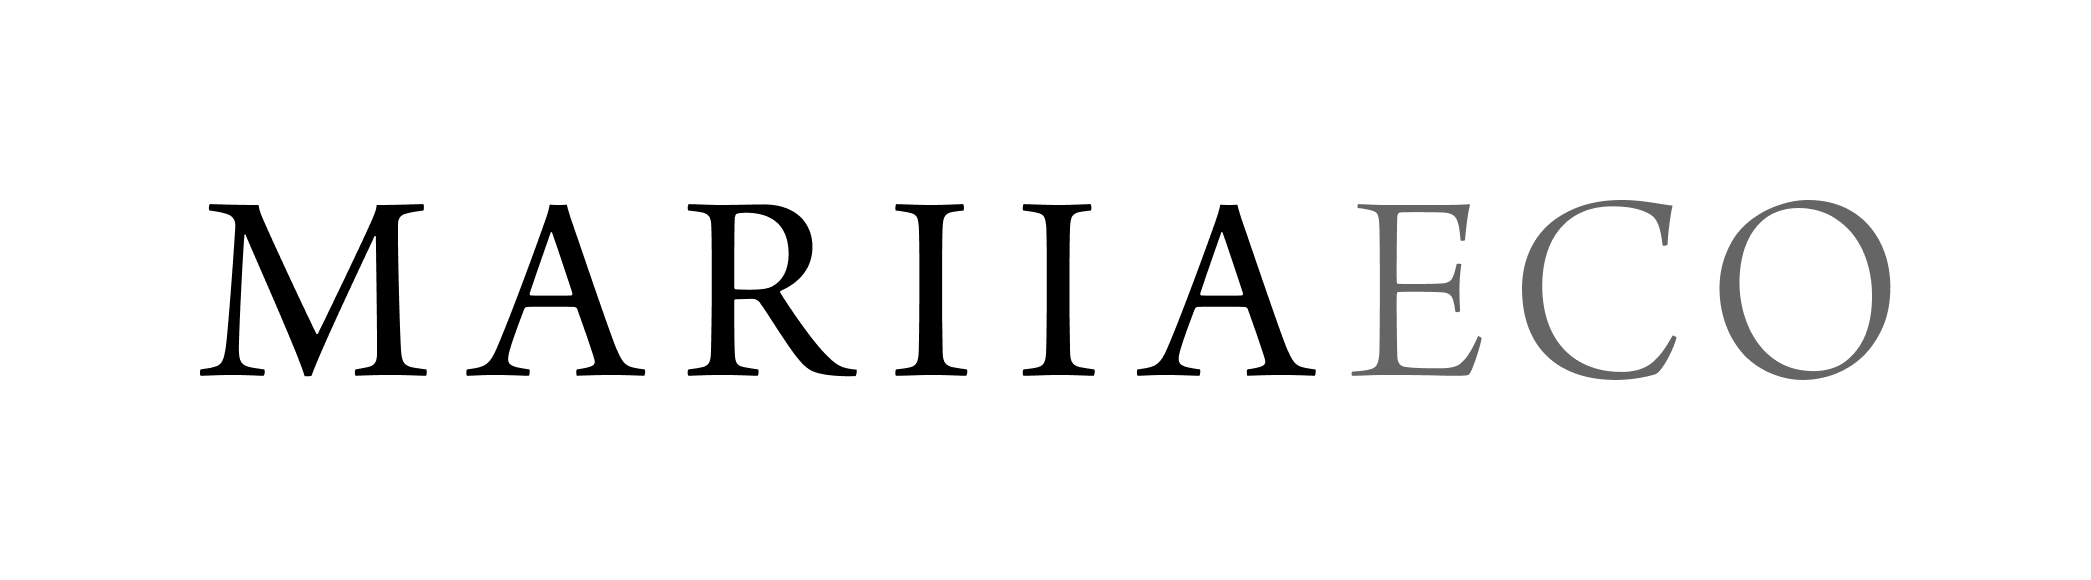 Mariia-Eco-logo.png